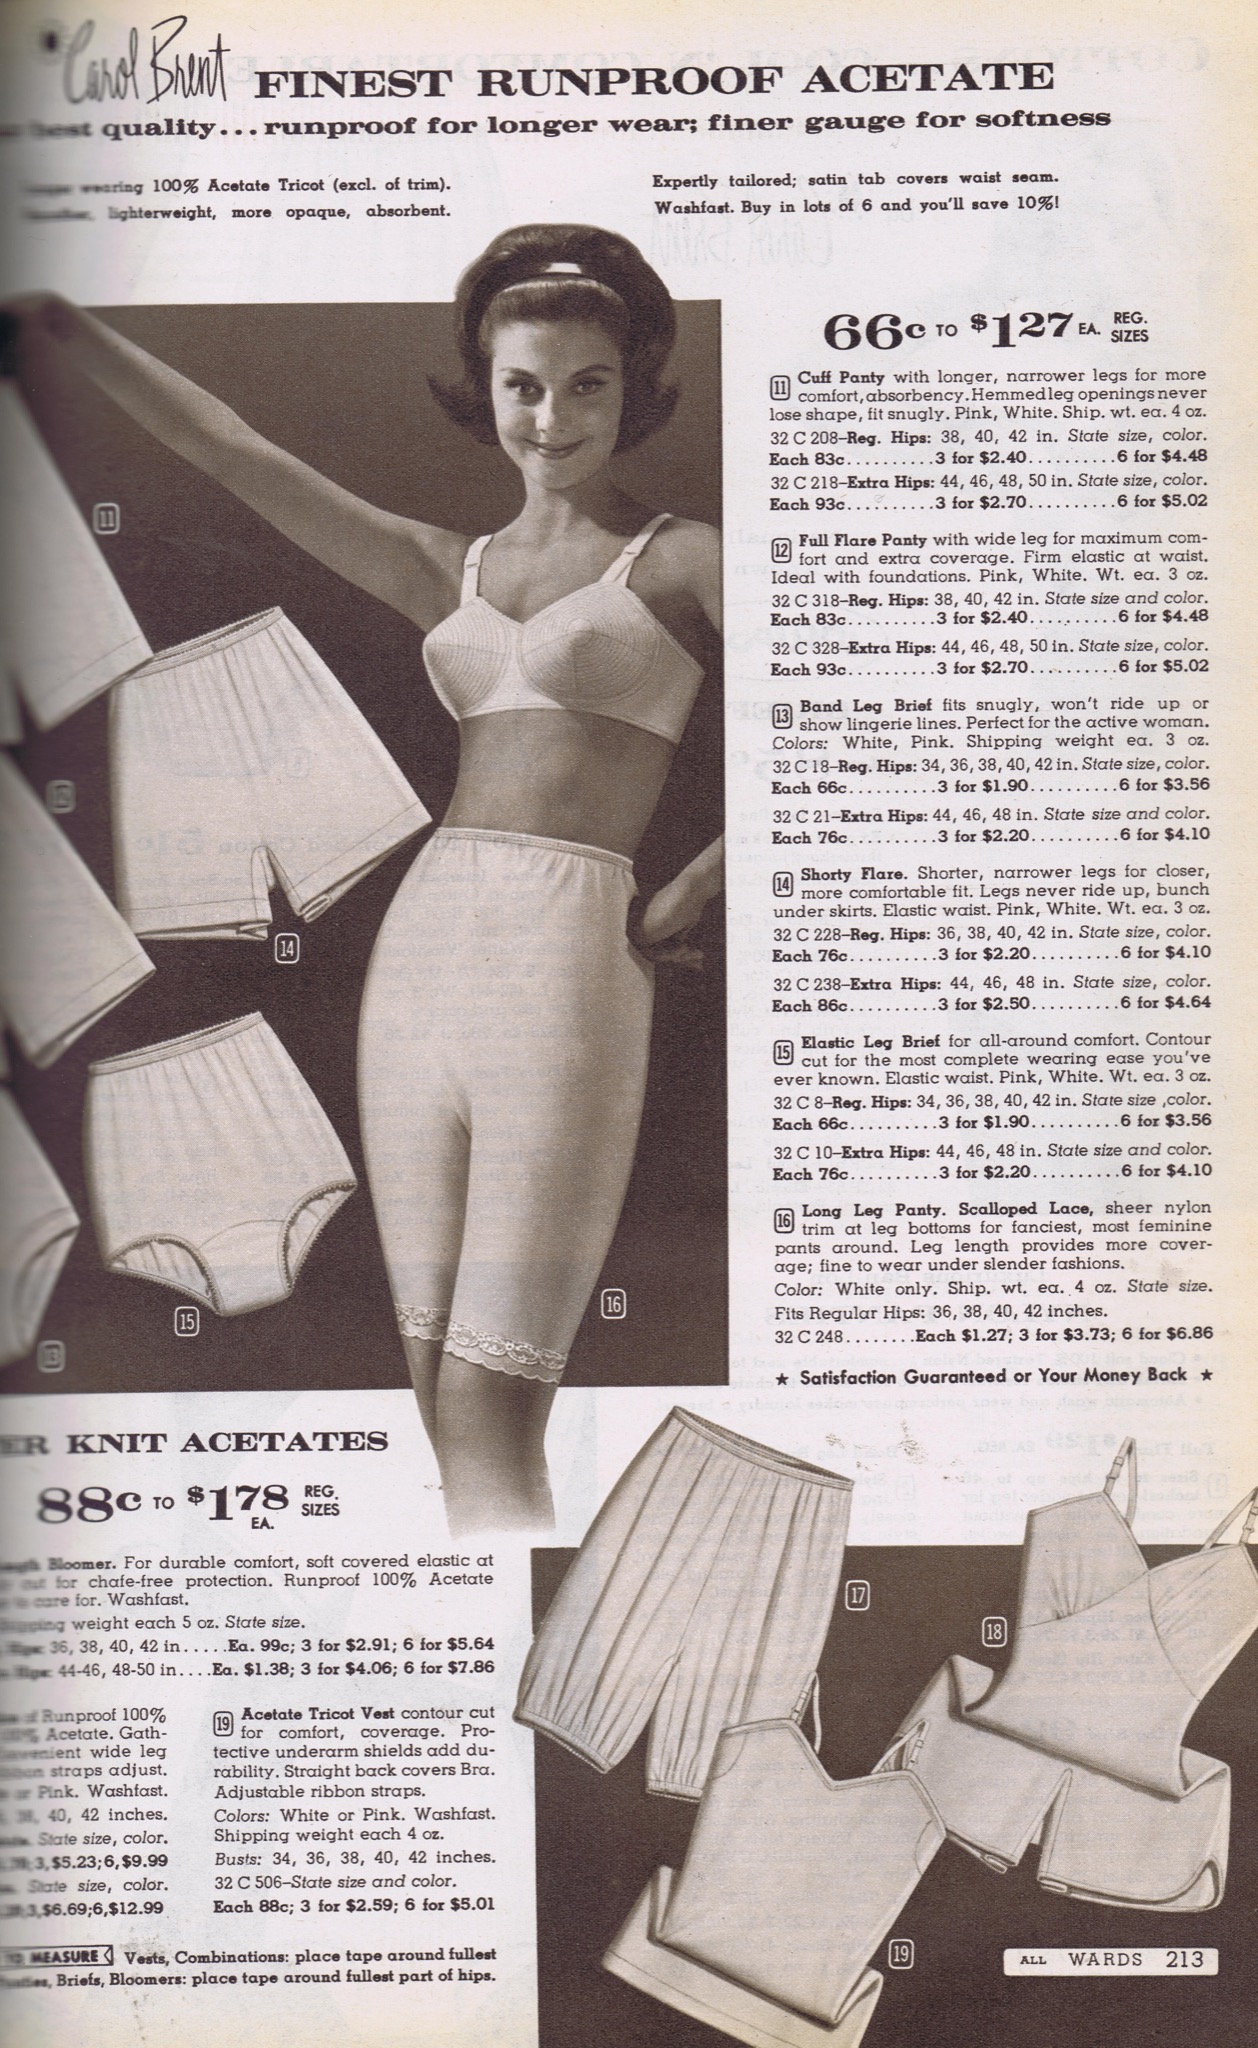 1950s Underwear Porn - Catalog porn - Underwear ads through the 20th century